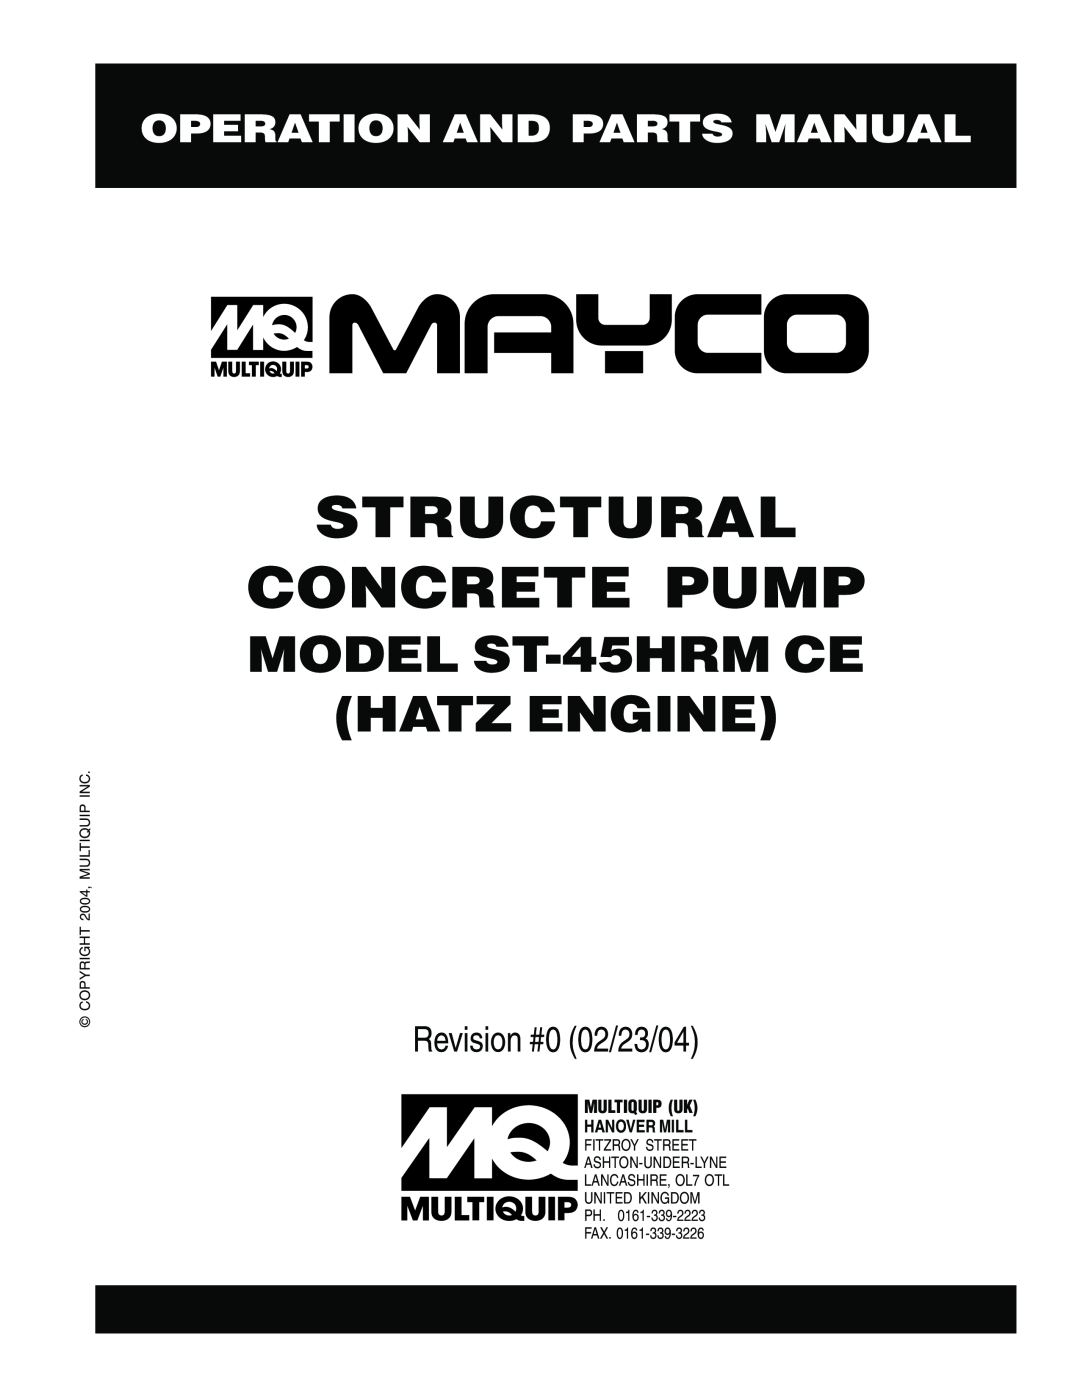 Multiquip ST-45HRM CE manual Operation And Parts Manual, Structural Concrete Pump, MODEL ST-45HRMCE HATZ ENGINE 